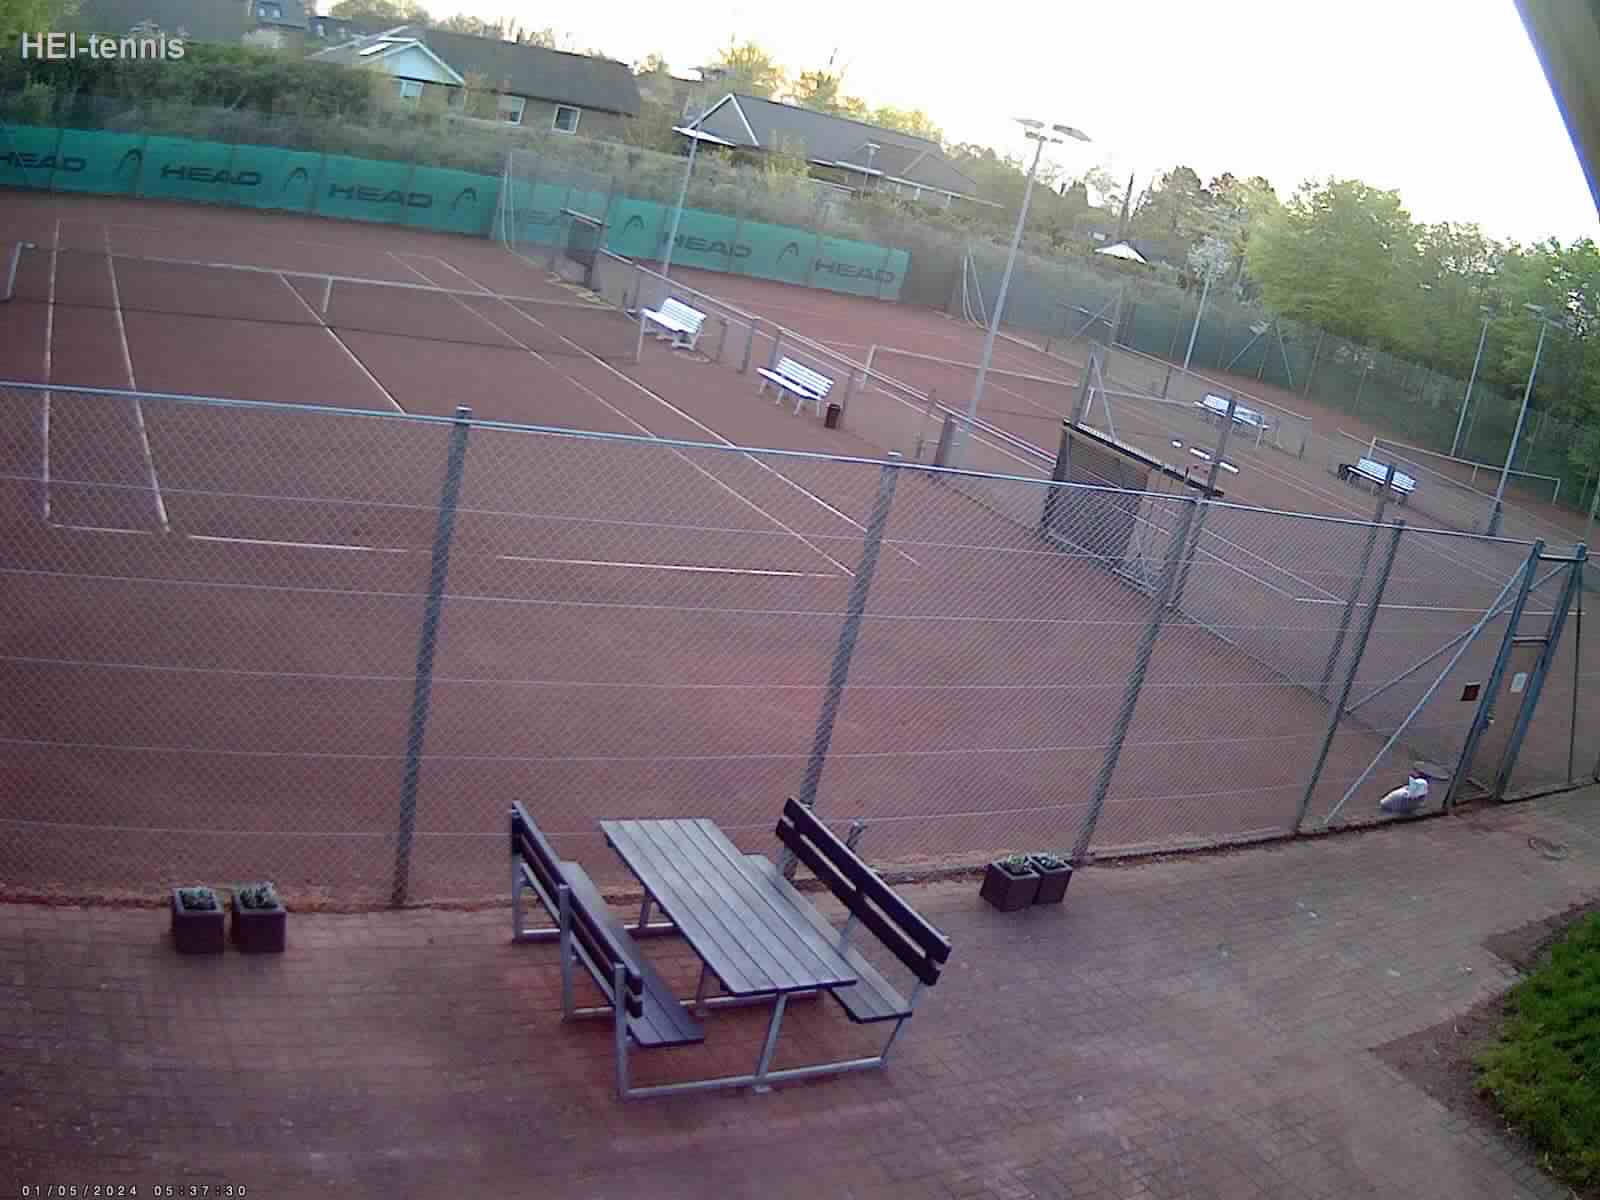 Webcam Index Tennis Denmark